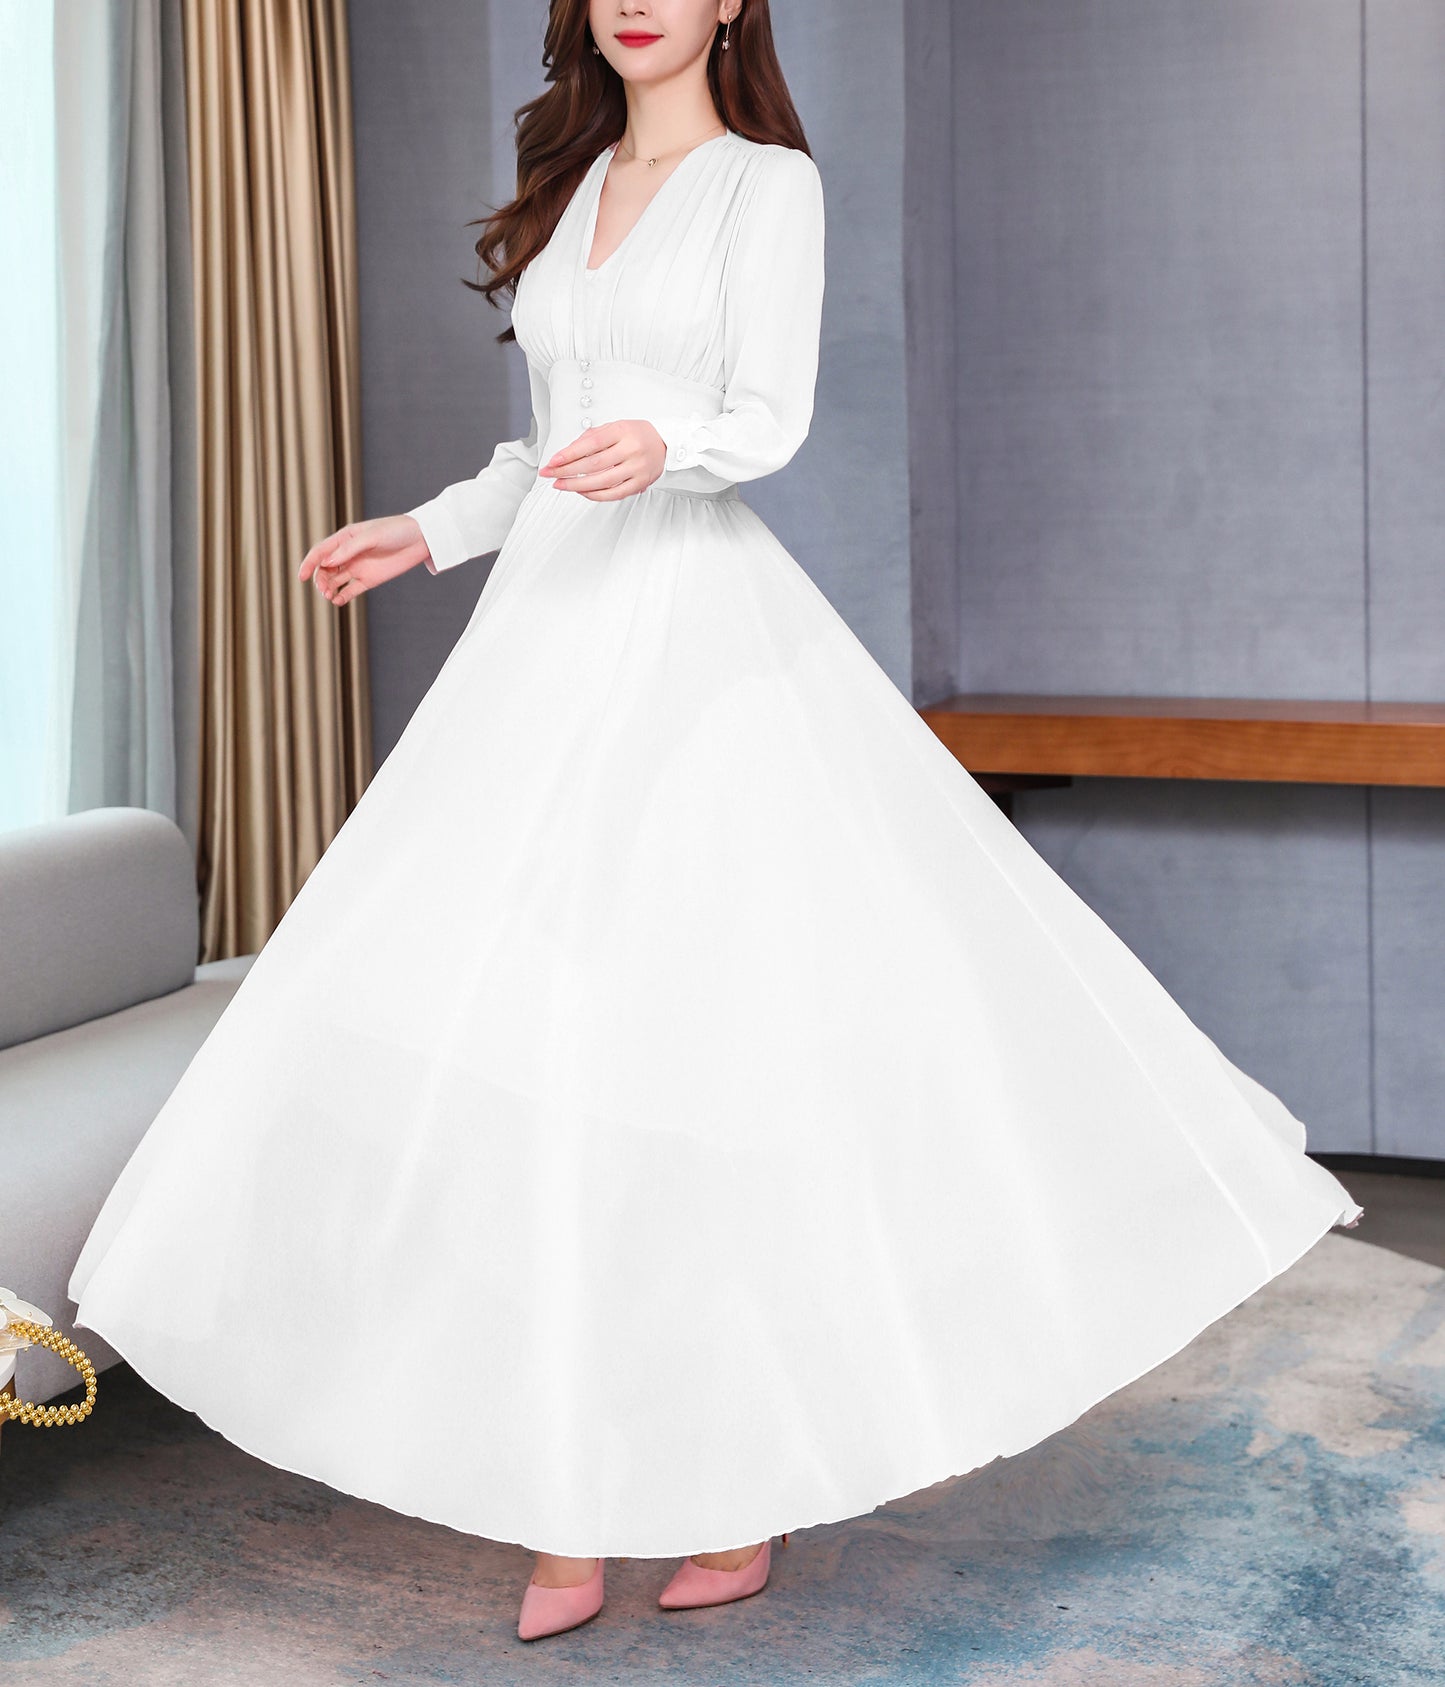 Classic Solid Color V-Neck Elegant Wedding Maxi Dress